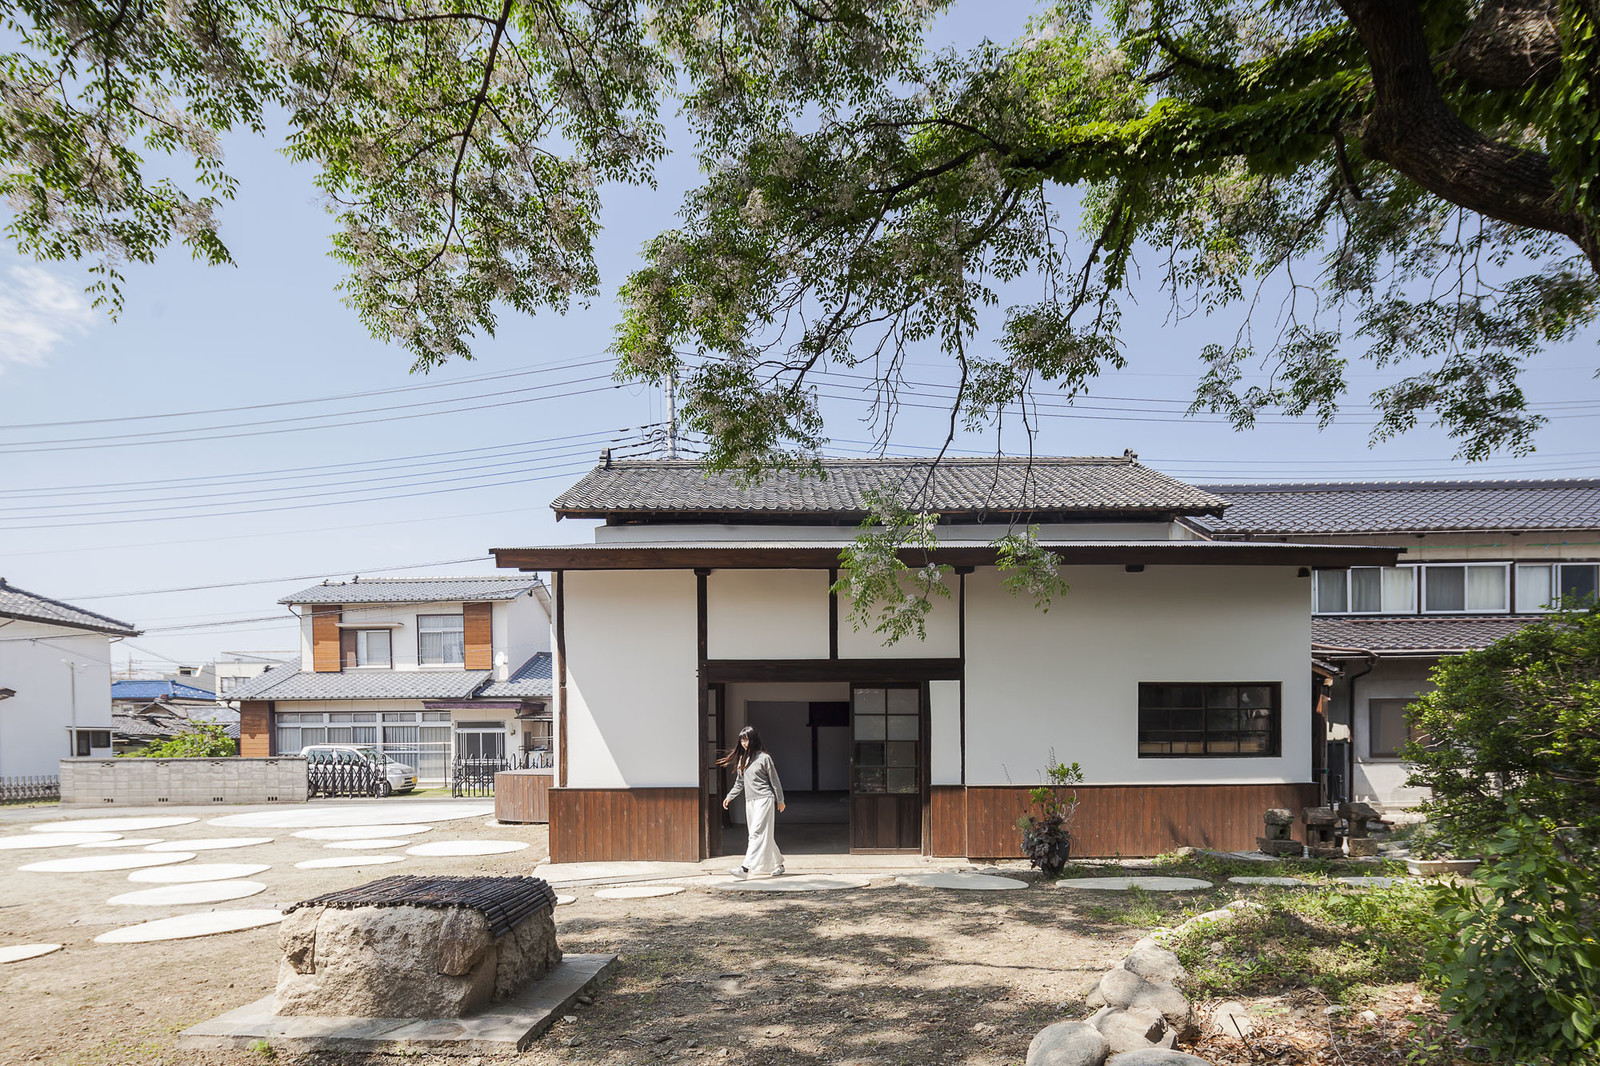 空き家問題の解決につながるか。江戸時代の酒蔵を改修した「蔵舞台」